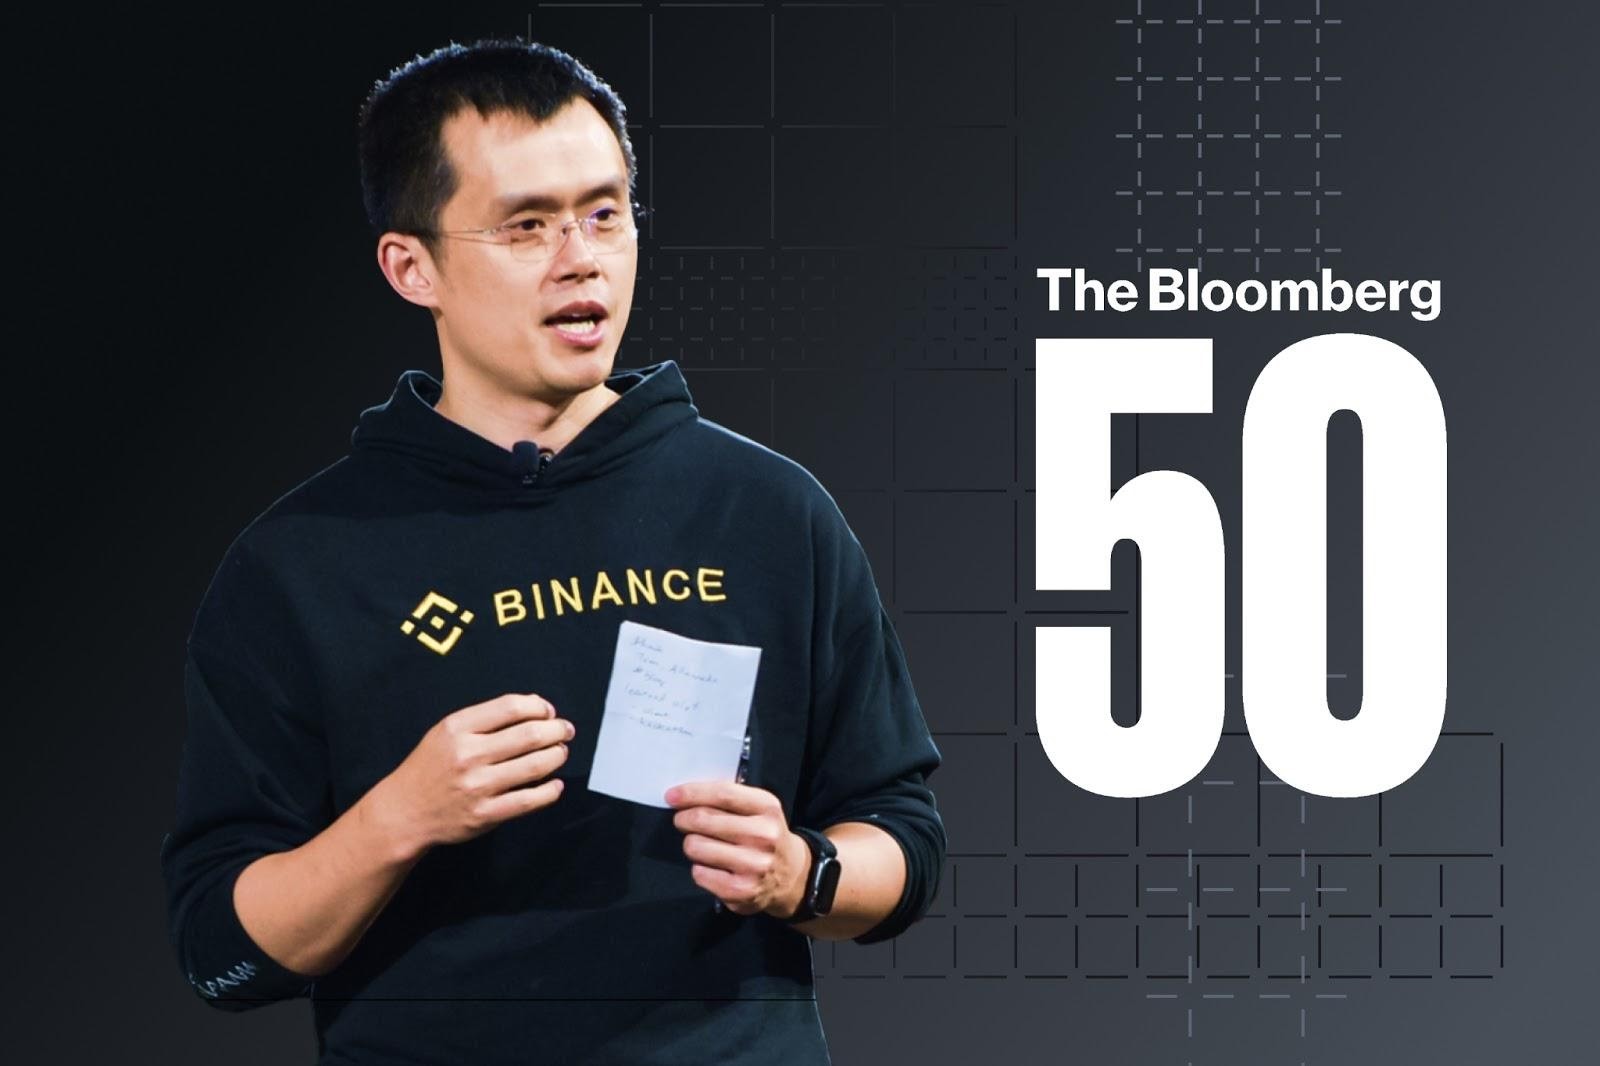 CEO de Binance ‘CZ’ incluido en el listado de líderes globales Bloomberg 50